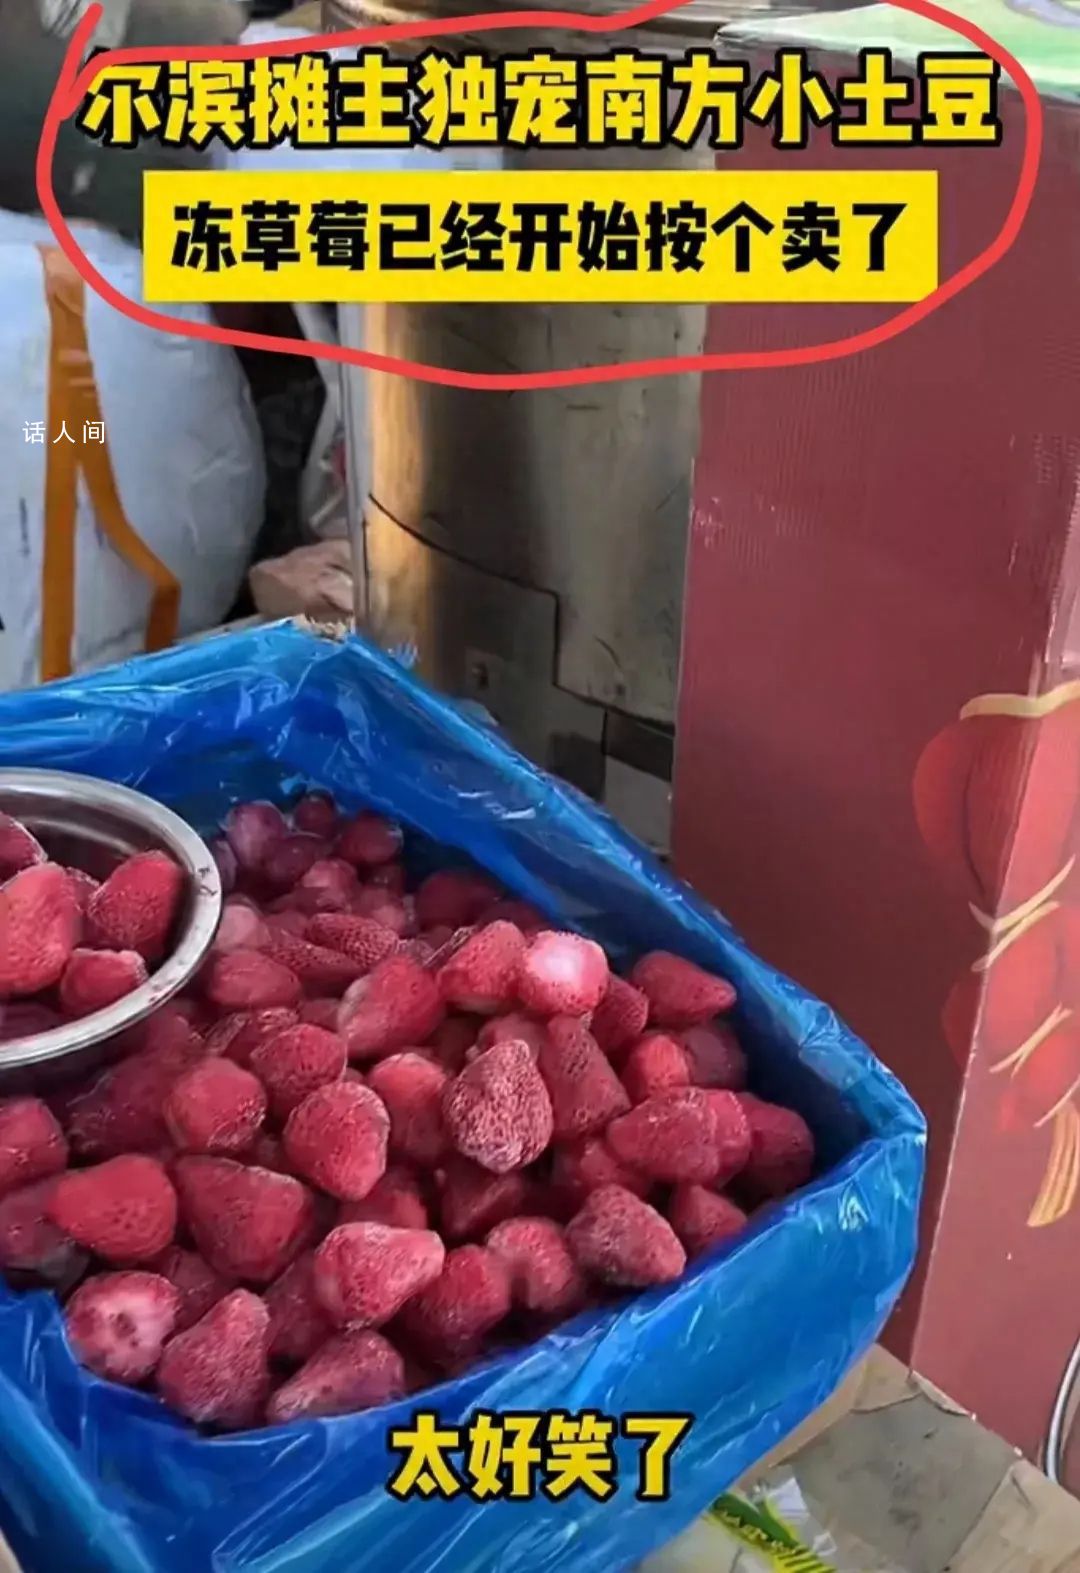 哈尔滨冻草莓都开始按个卖了 独宠南方小土豆